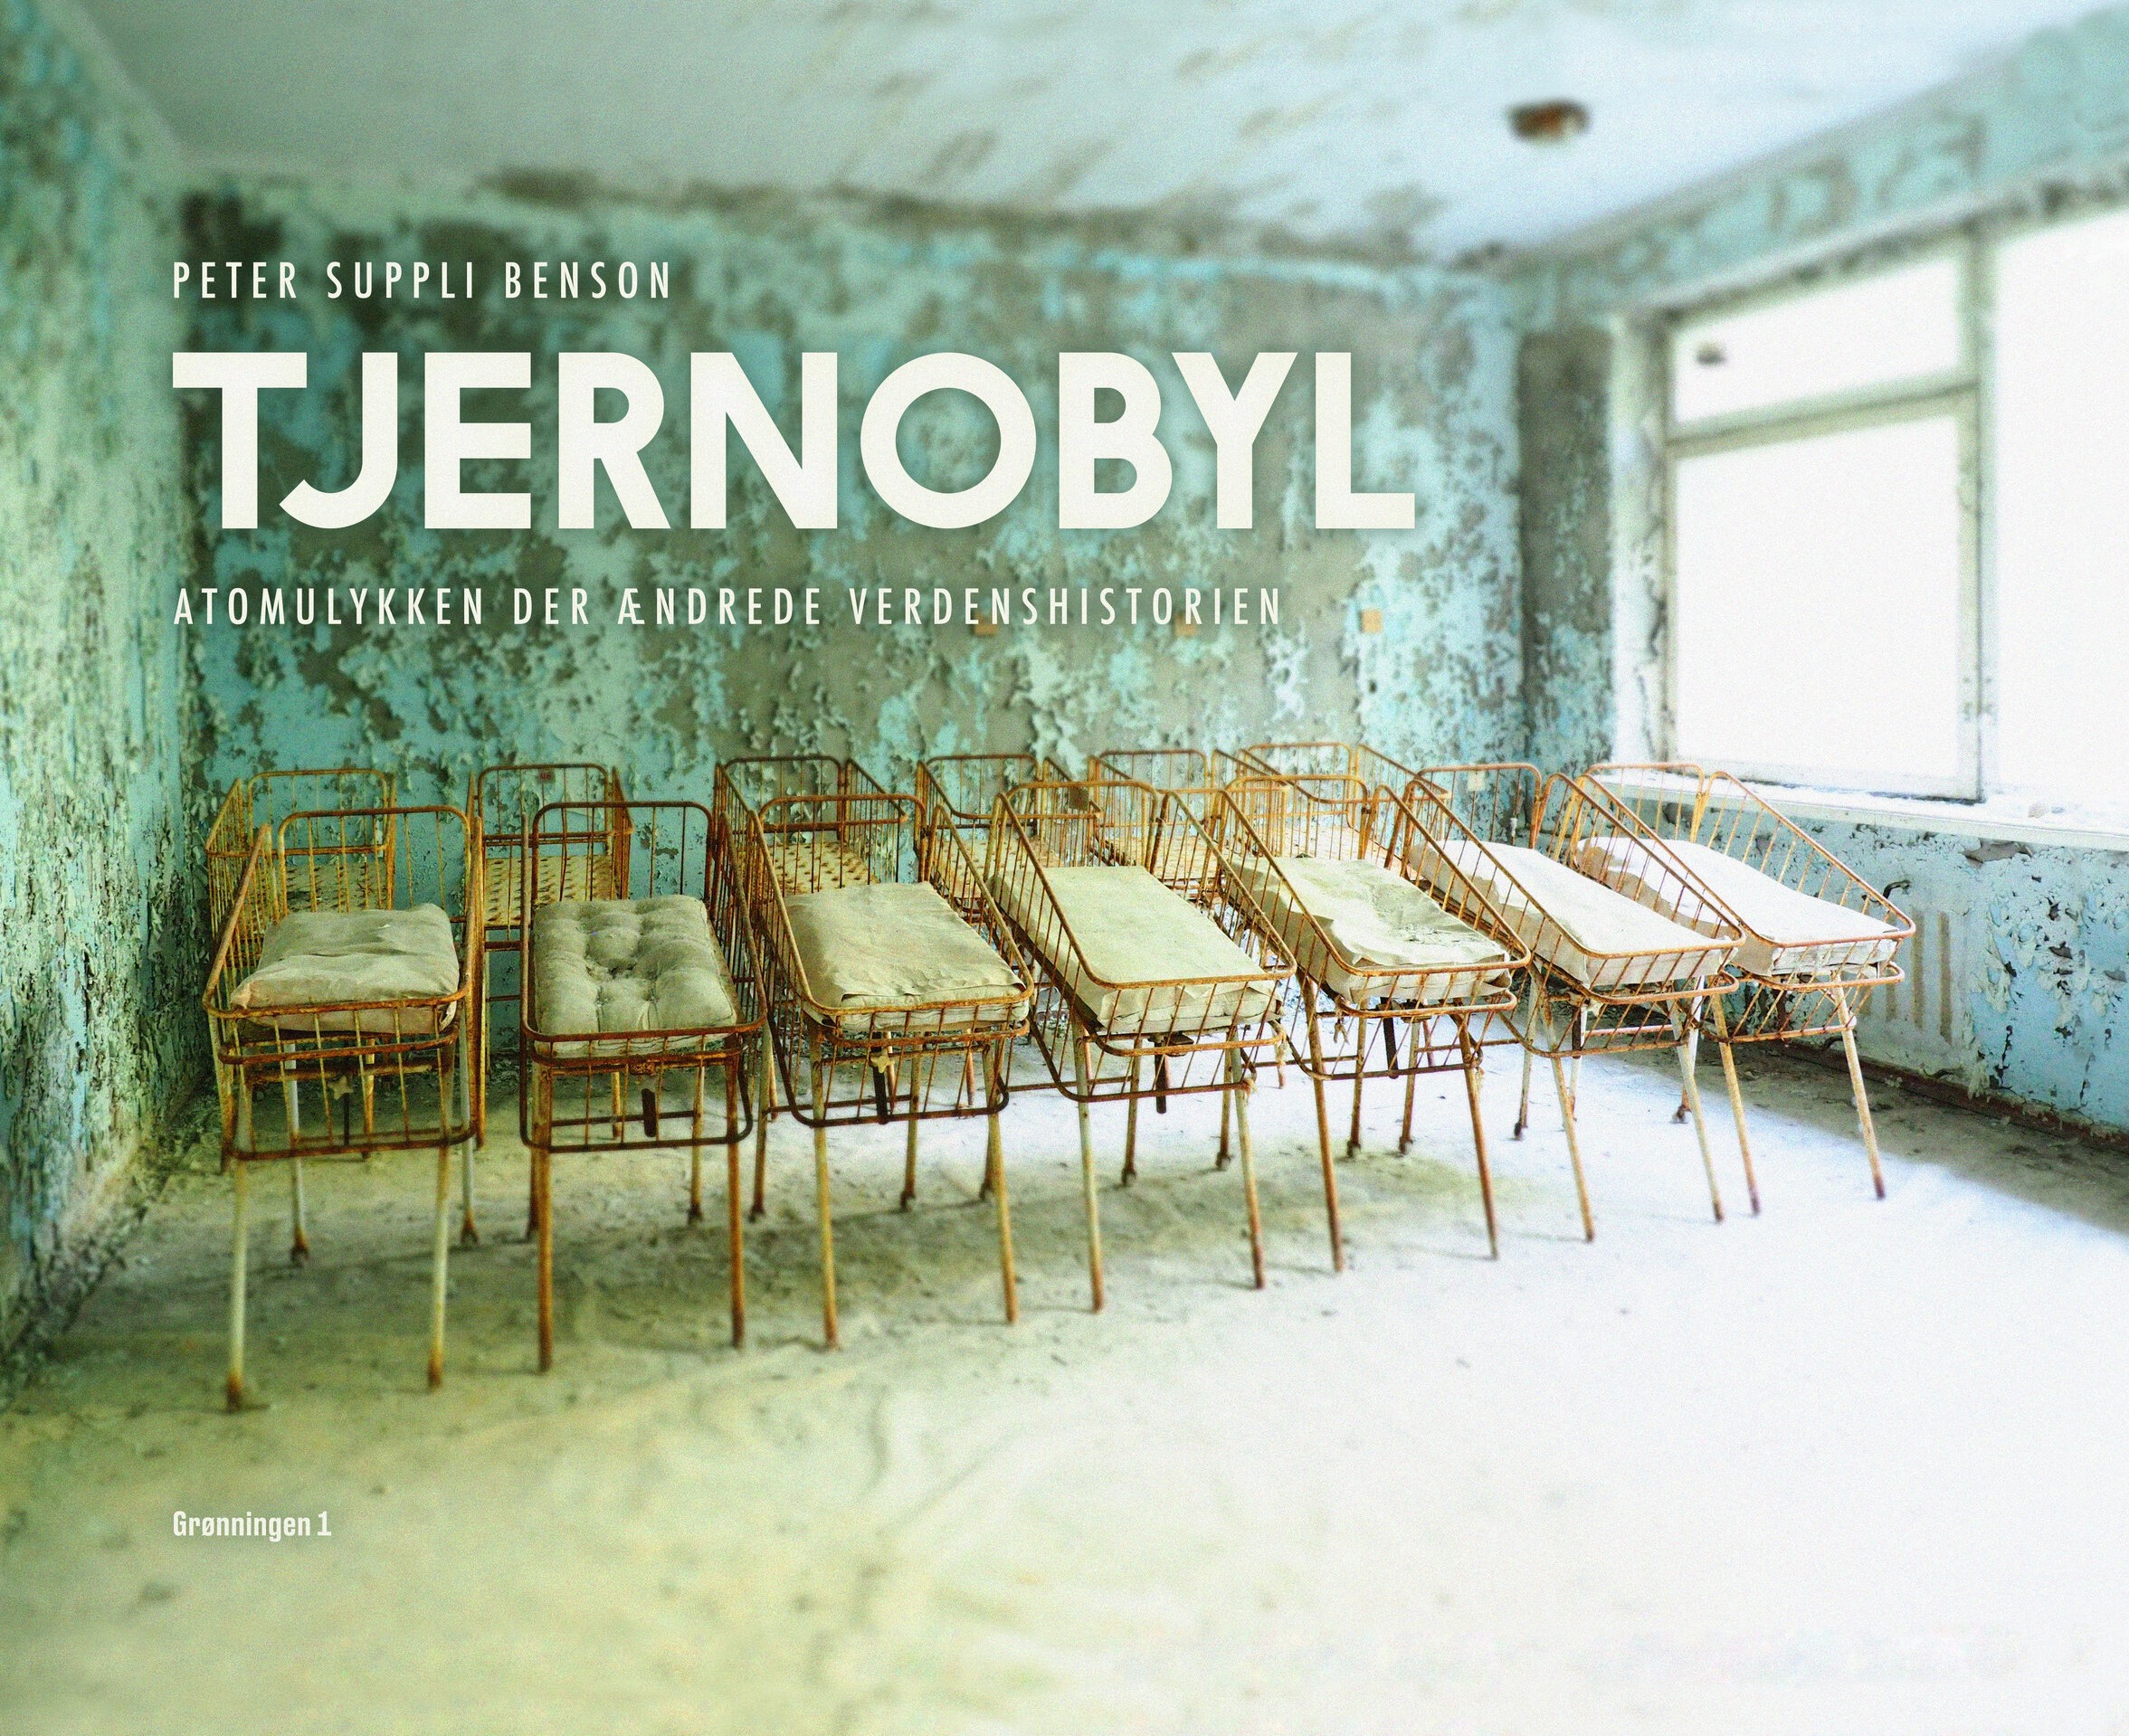 TJERNOBYL – atomulykken, der ændrede verdenshistorien